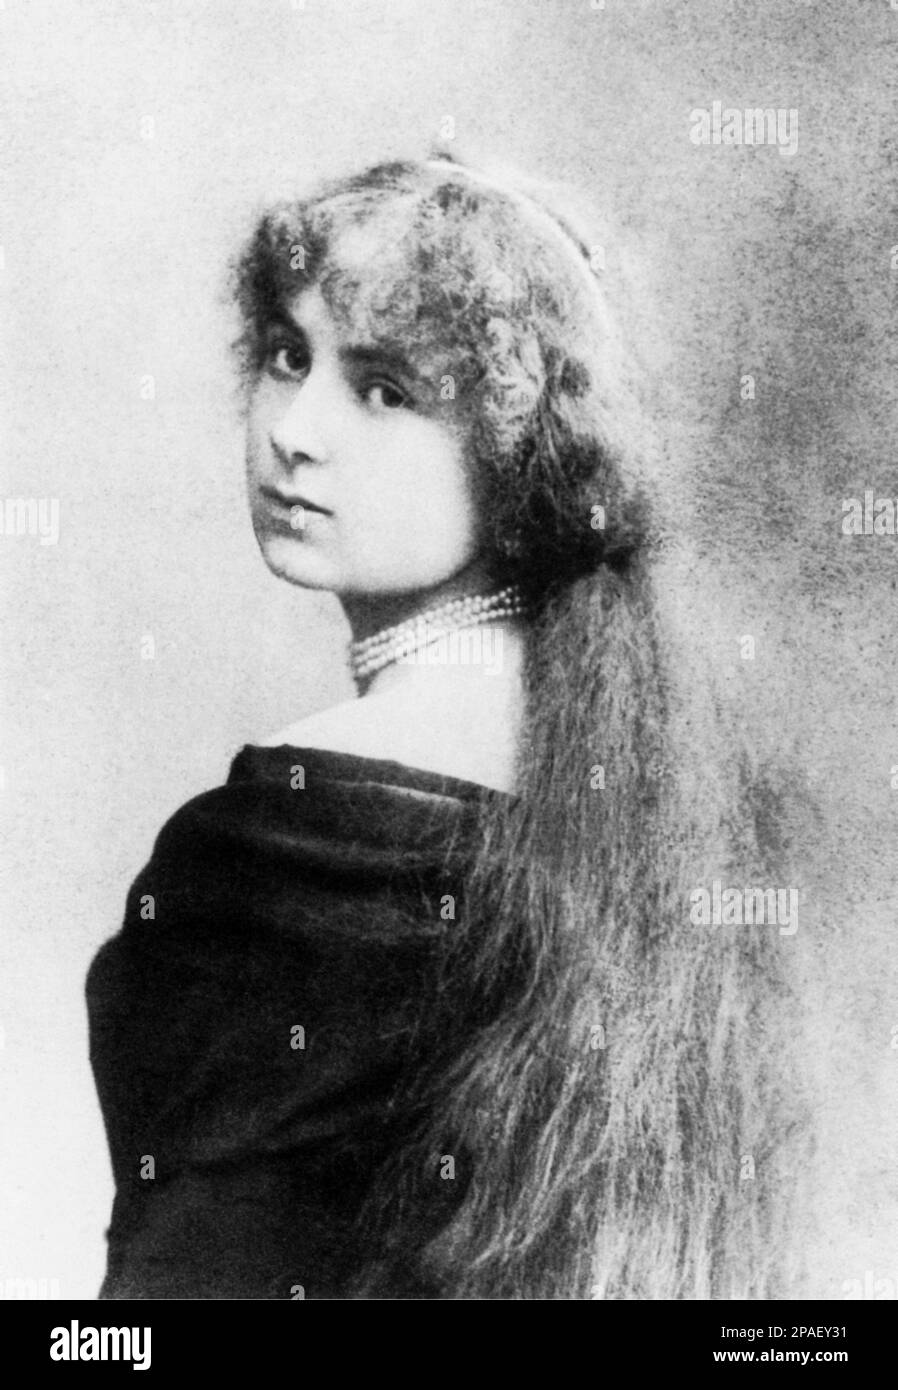 1879 : la principessa MARIA HARDOUIN DEL GALLESE , sposata nel 1883 con il poeta , politico e scrittore italiano GABRIELE D'ANNUNZIO (Pescara 1863 - Gardone Riviera 1938 ) - Collana perle - collana di perle - perla - bijoux - gioielli - gioielli pizzo - pizzo - ritratto - silletto - Annunzio - DI GALLESE - principessa - nobili - nobiltà - Nobiltà italiana - BELLE EPOQUE ---- ARCHIVIO GBB Foto Stock